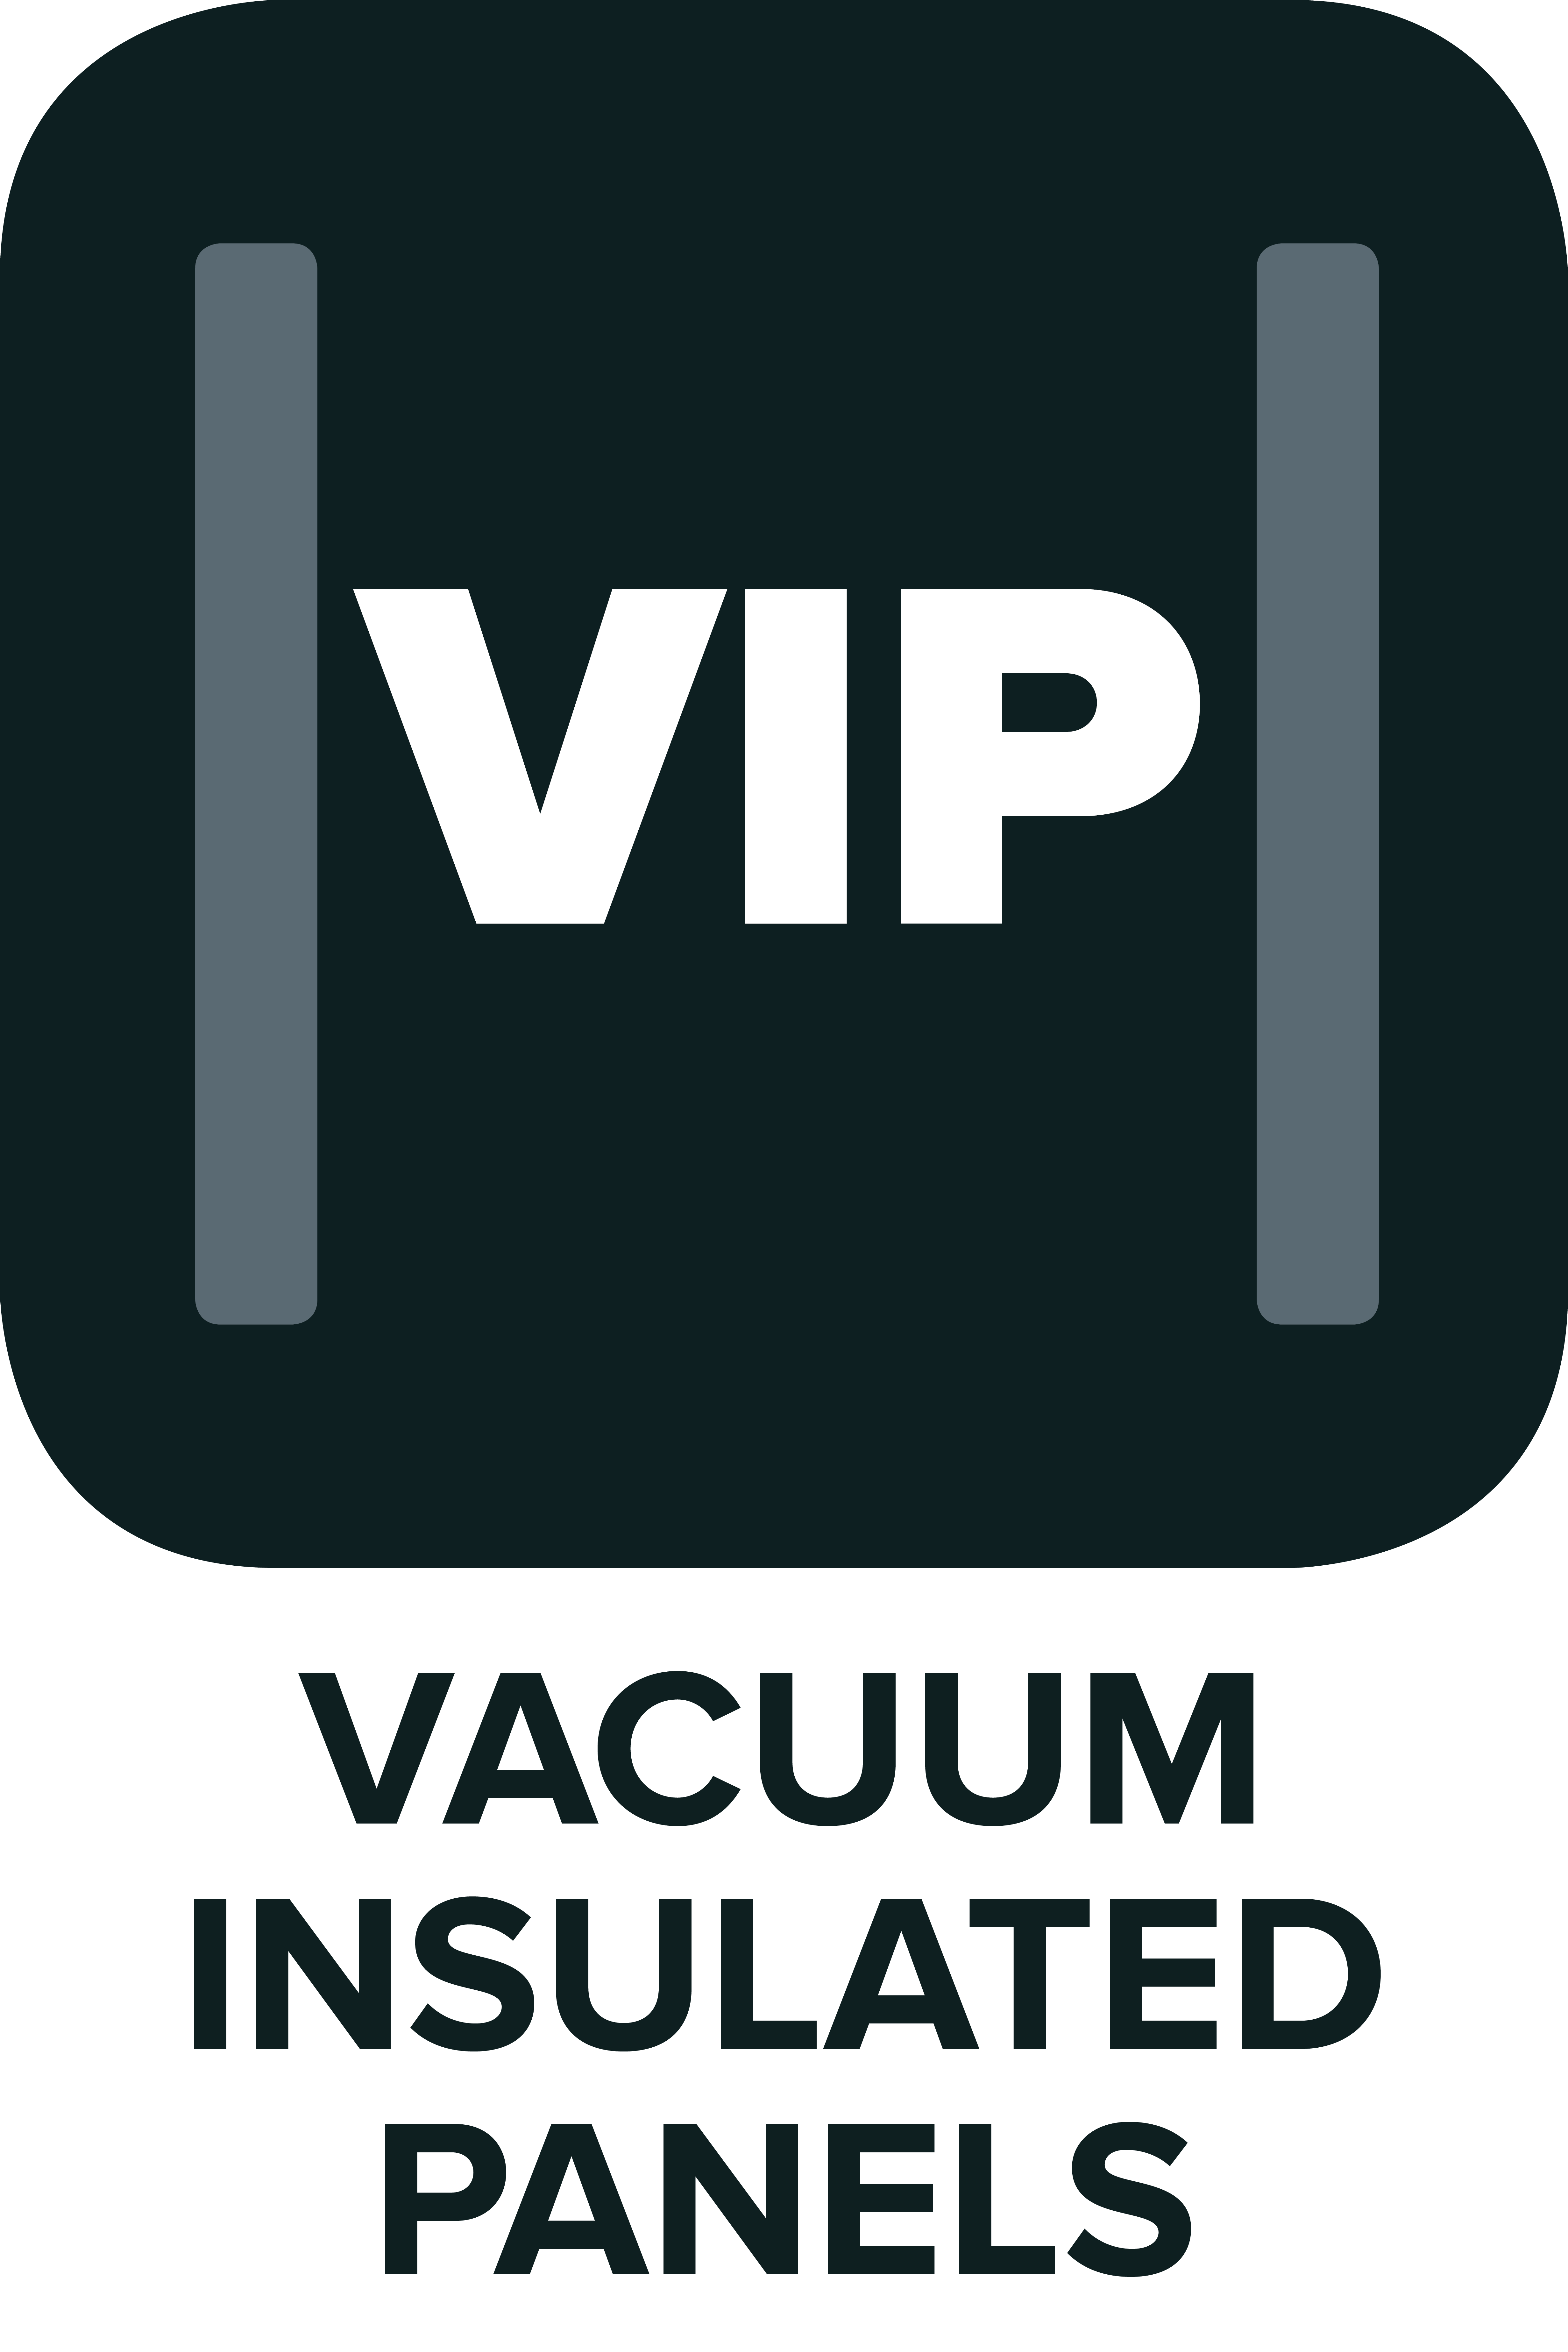 Vacuum insulated panels